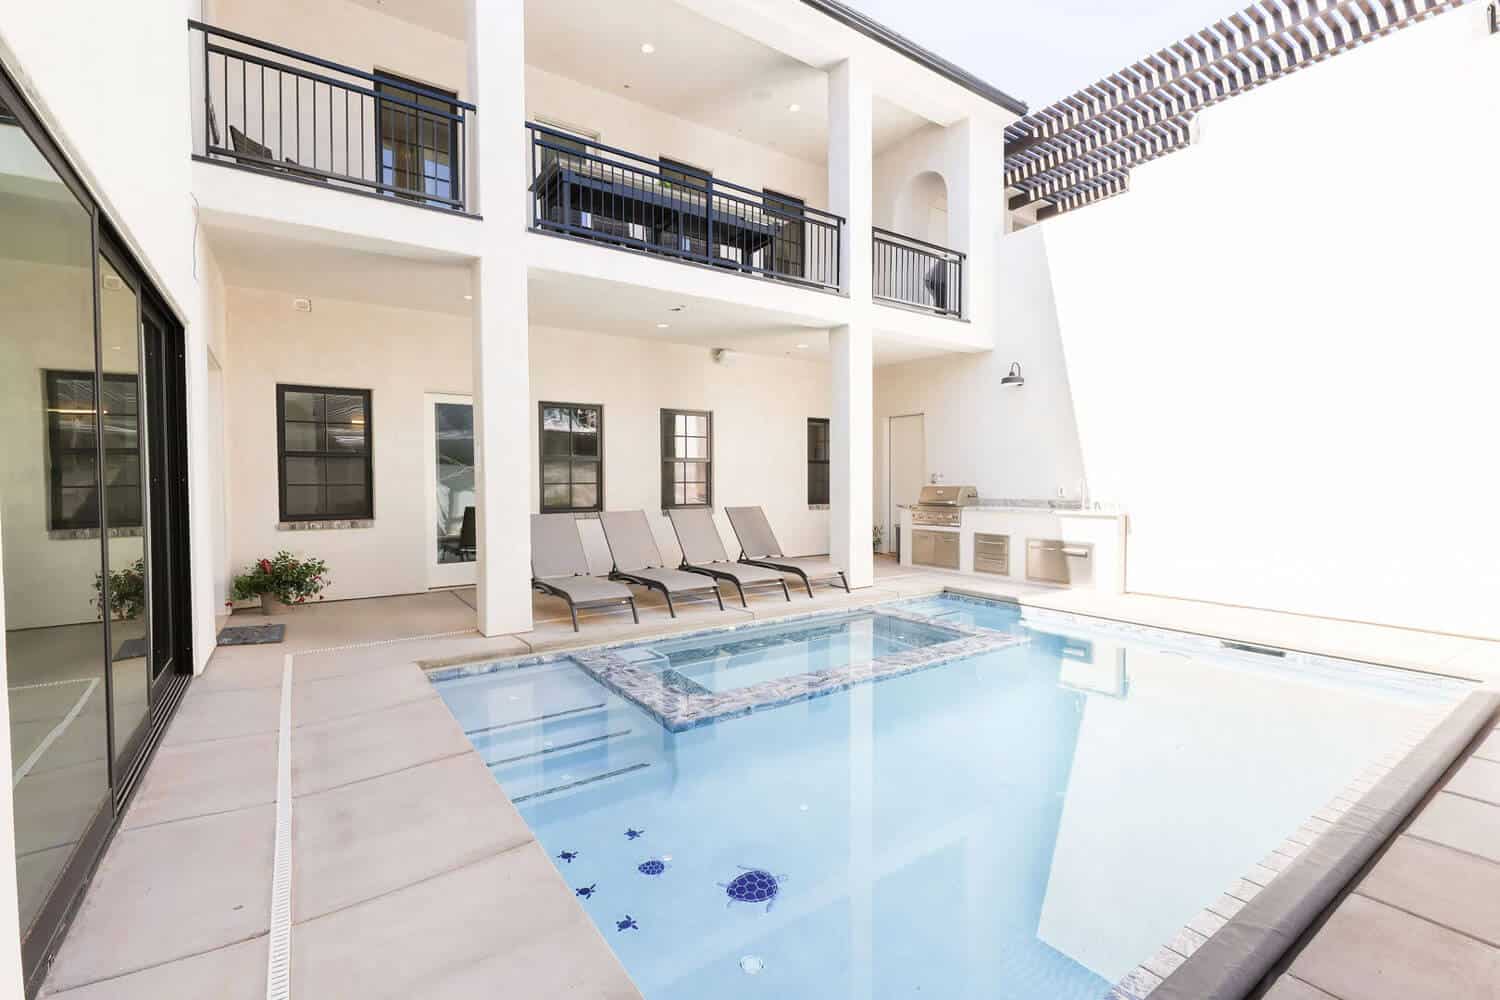 pool patio luxury vacation home in St George, UT | southern Utah custom home builder | Dennis Miller Homes